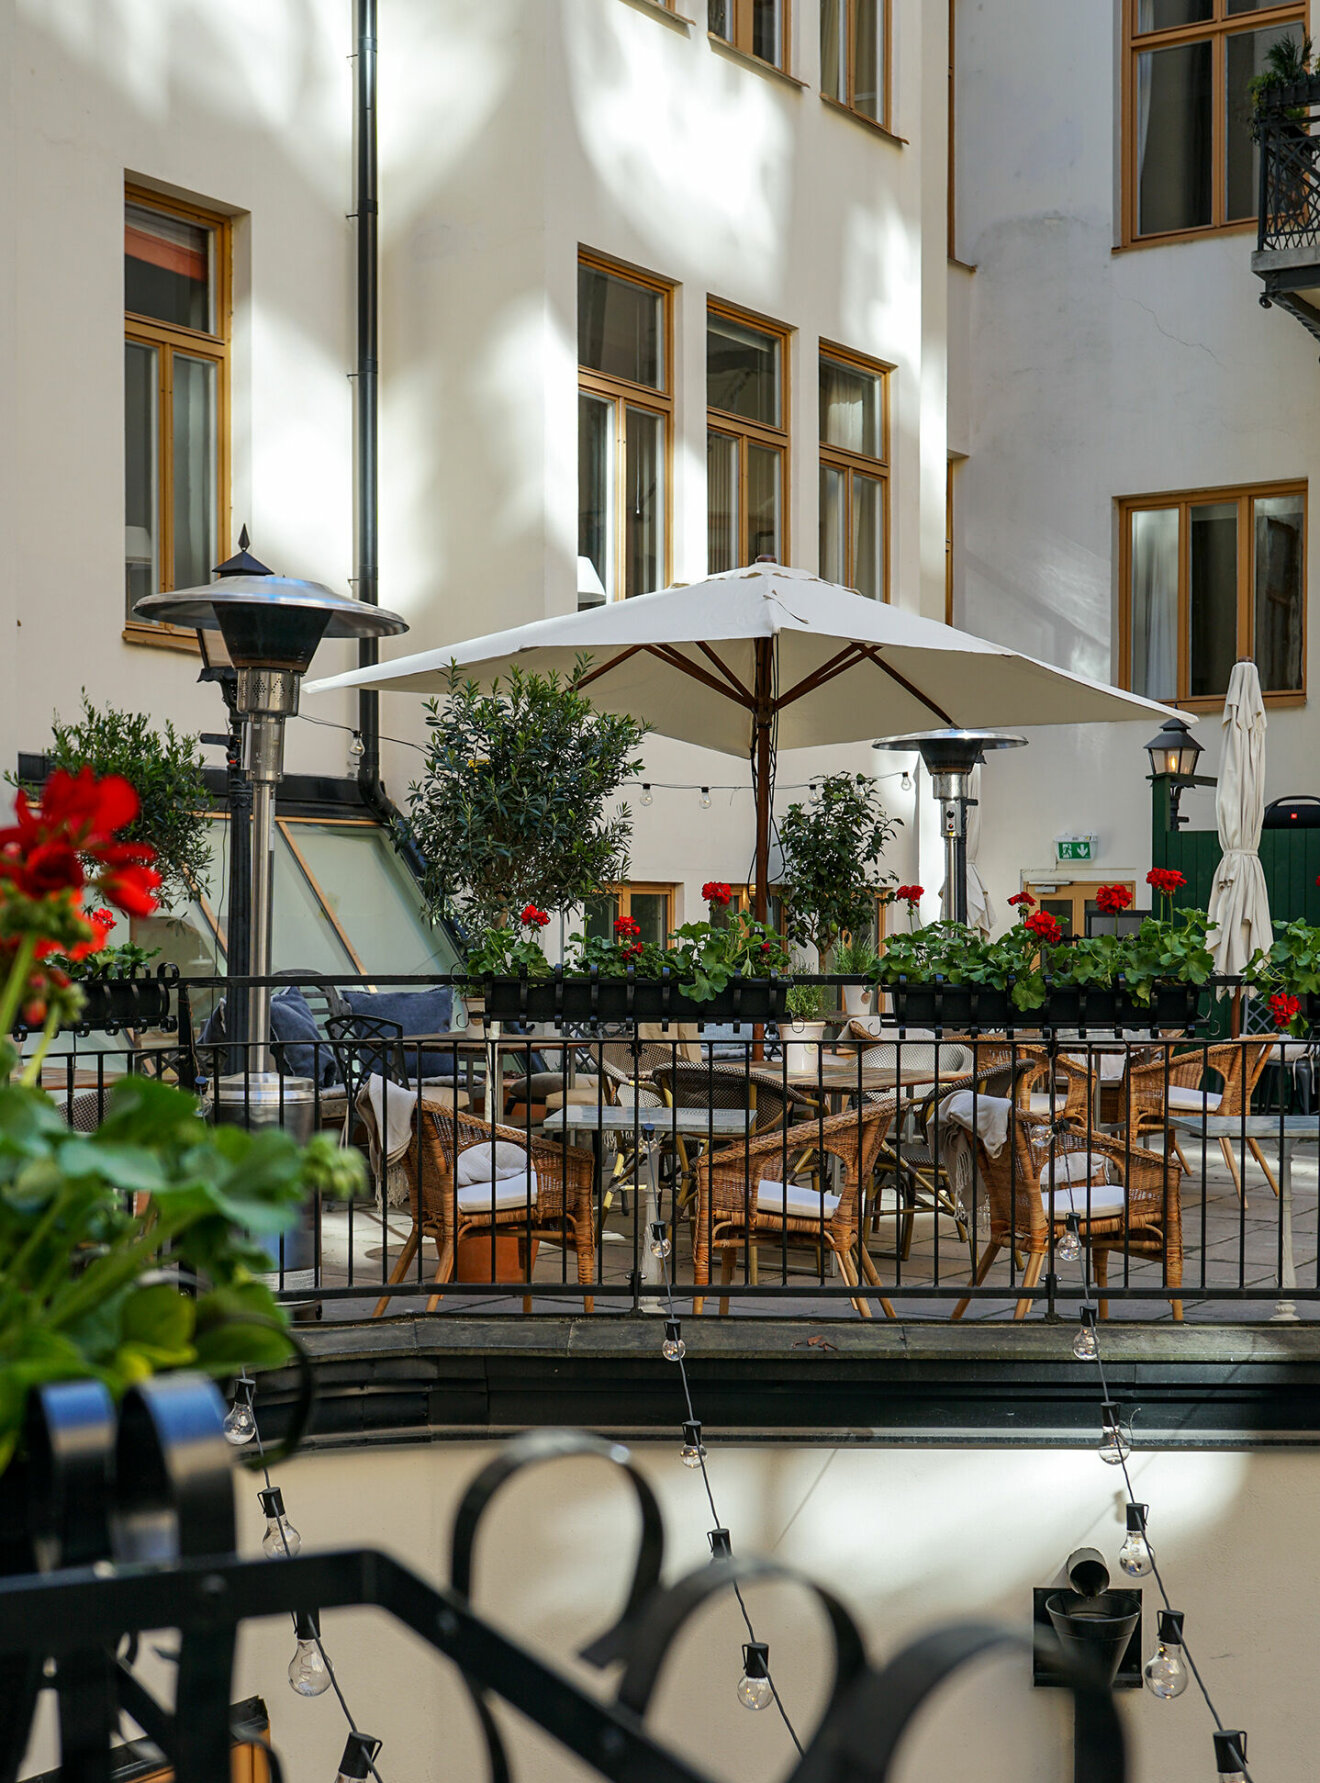 Hotell Sparriw Le Garden är Stockholms bäst undangömda uteservering